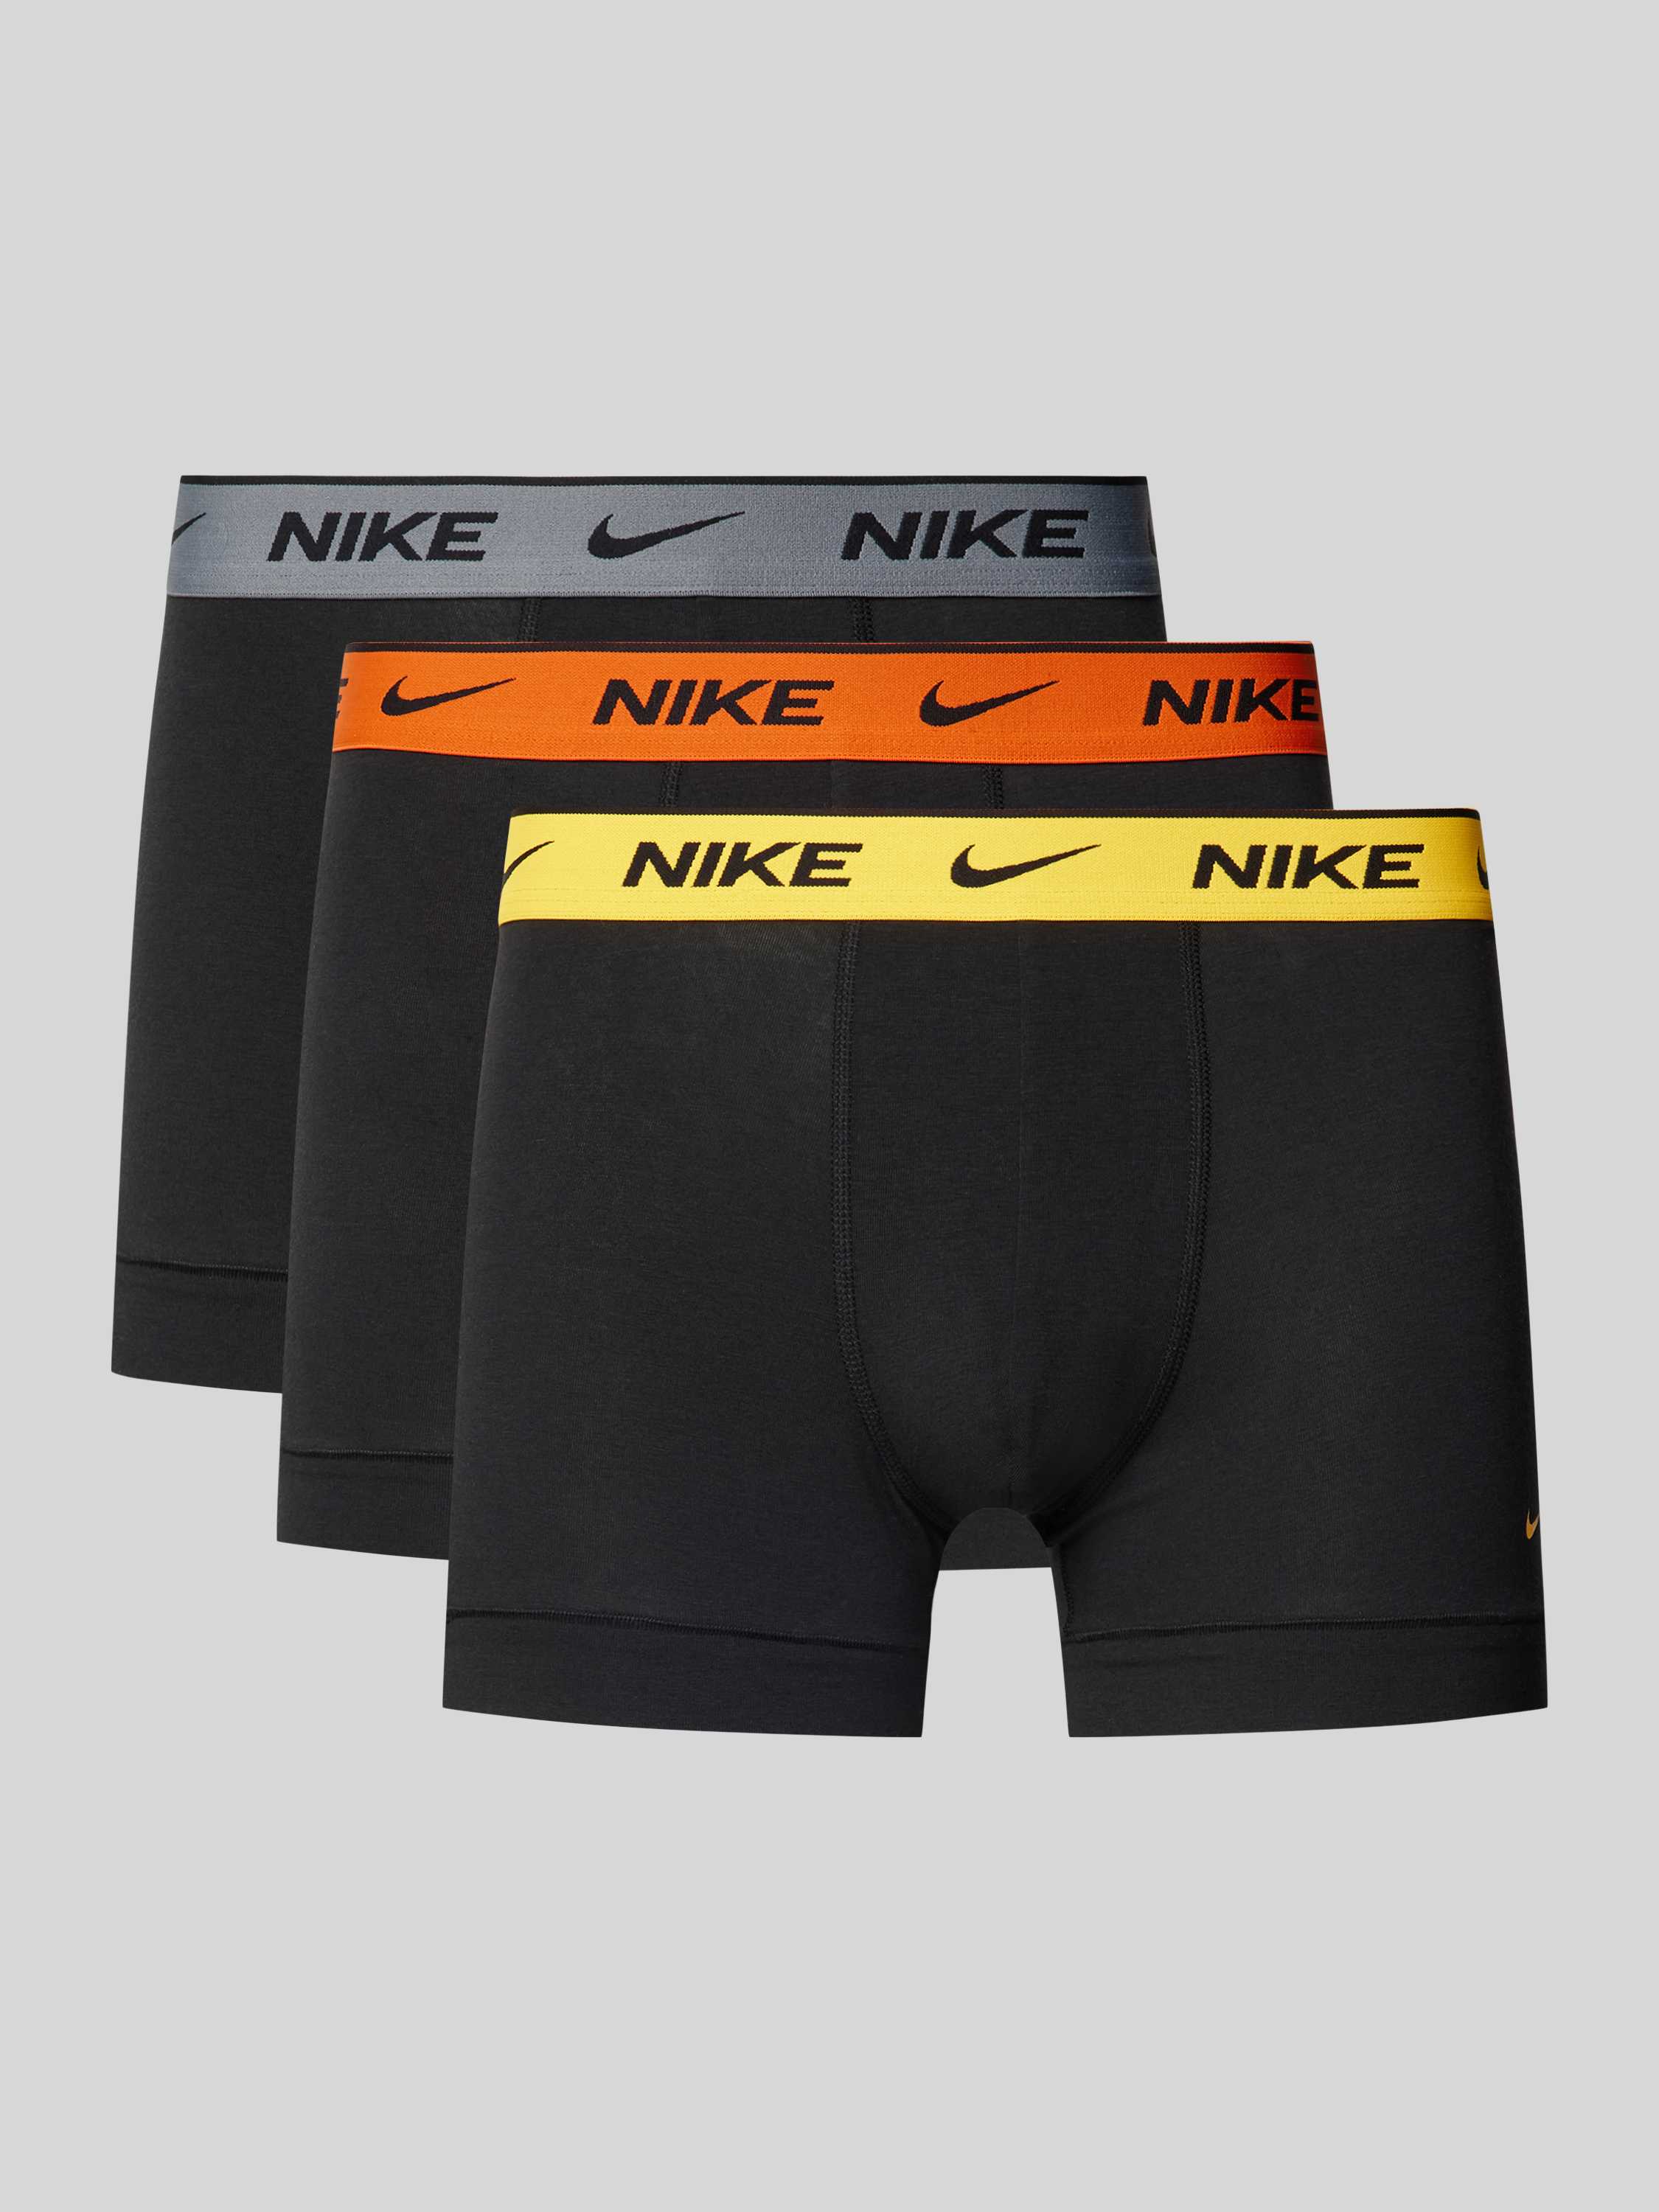 Nike Boxershort met labeldetail in een set van 3 stuks